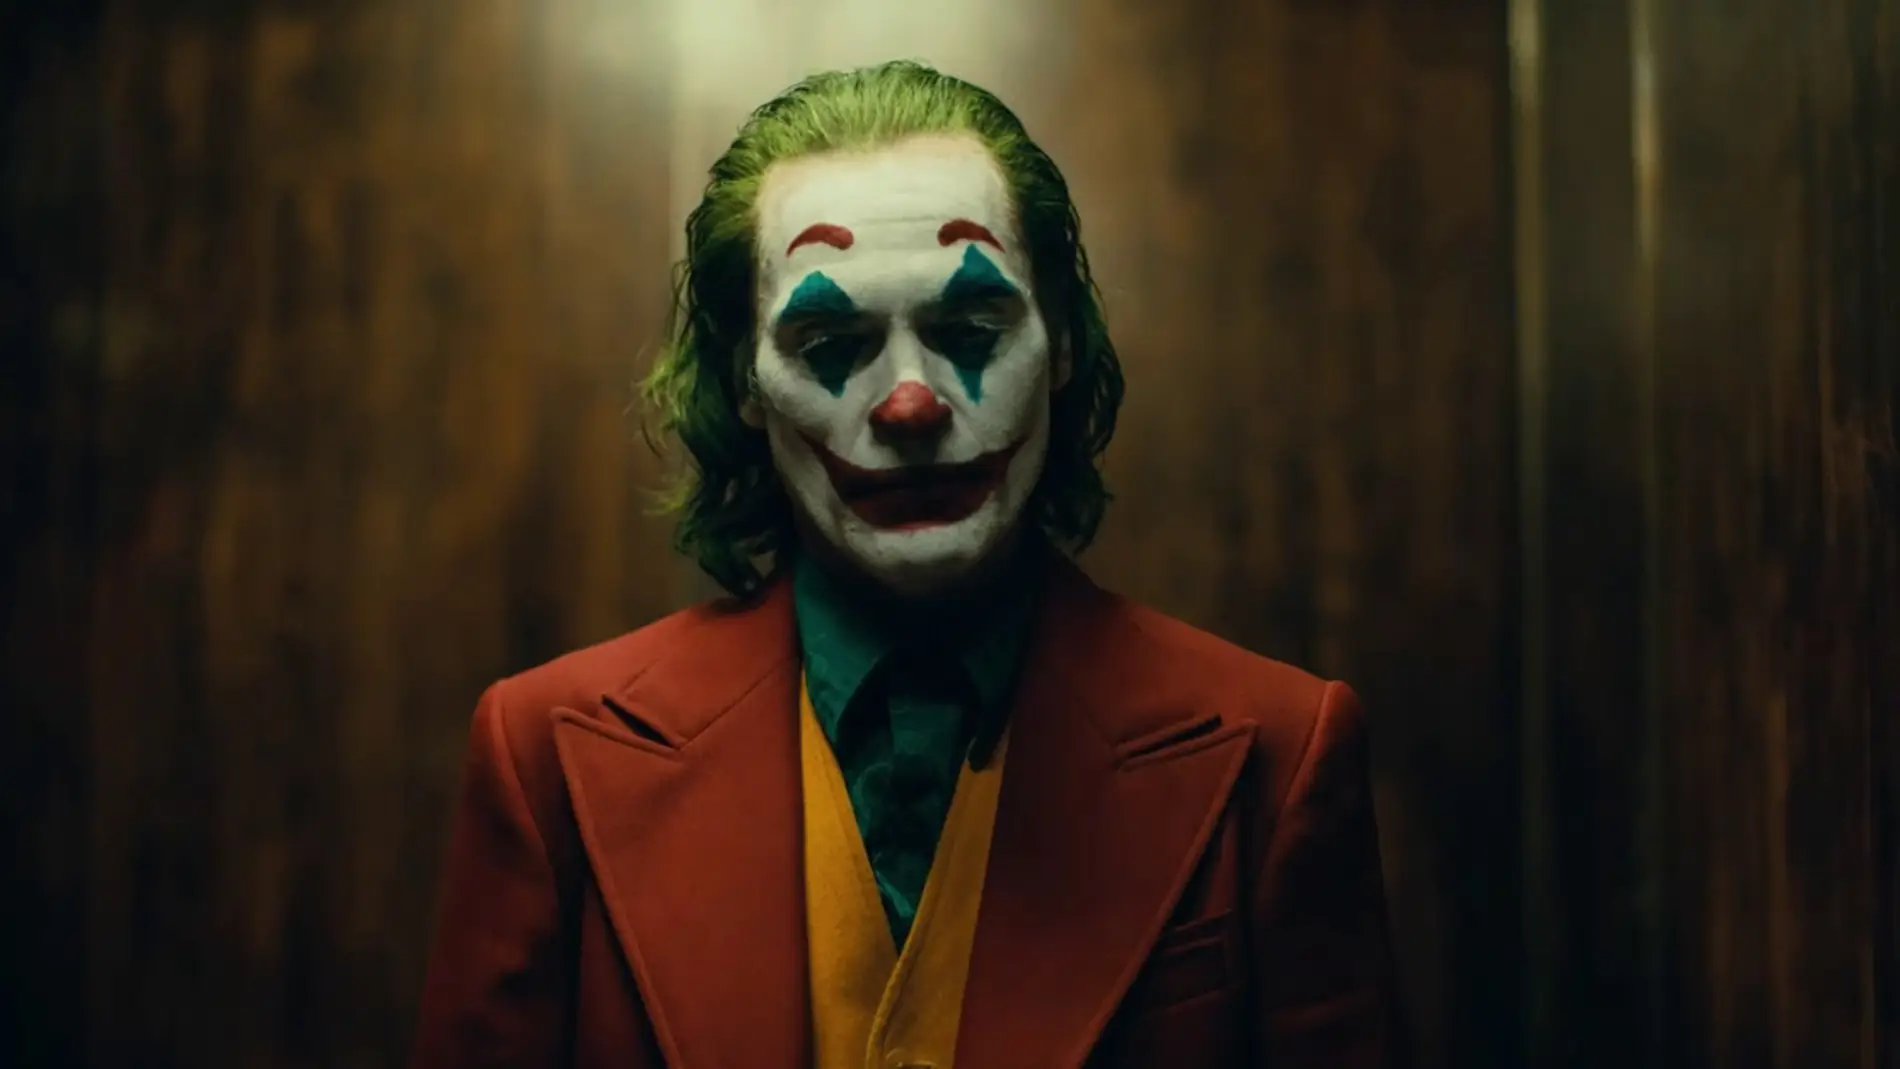 Descodificar cambiar Excretar Teaser tráiler de 'Joker' con Joaquin Phoenix: Alegra esa cara